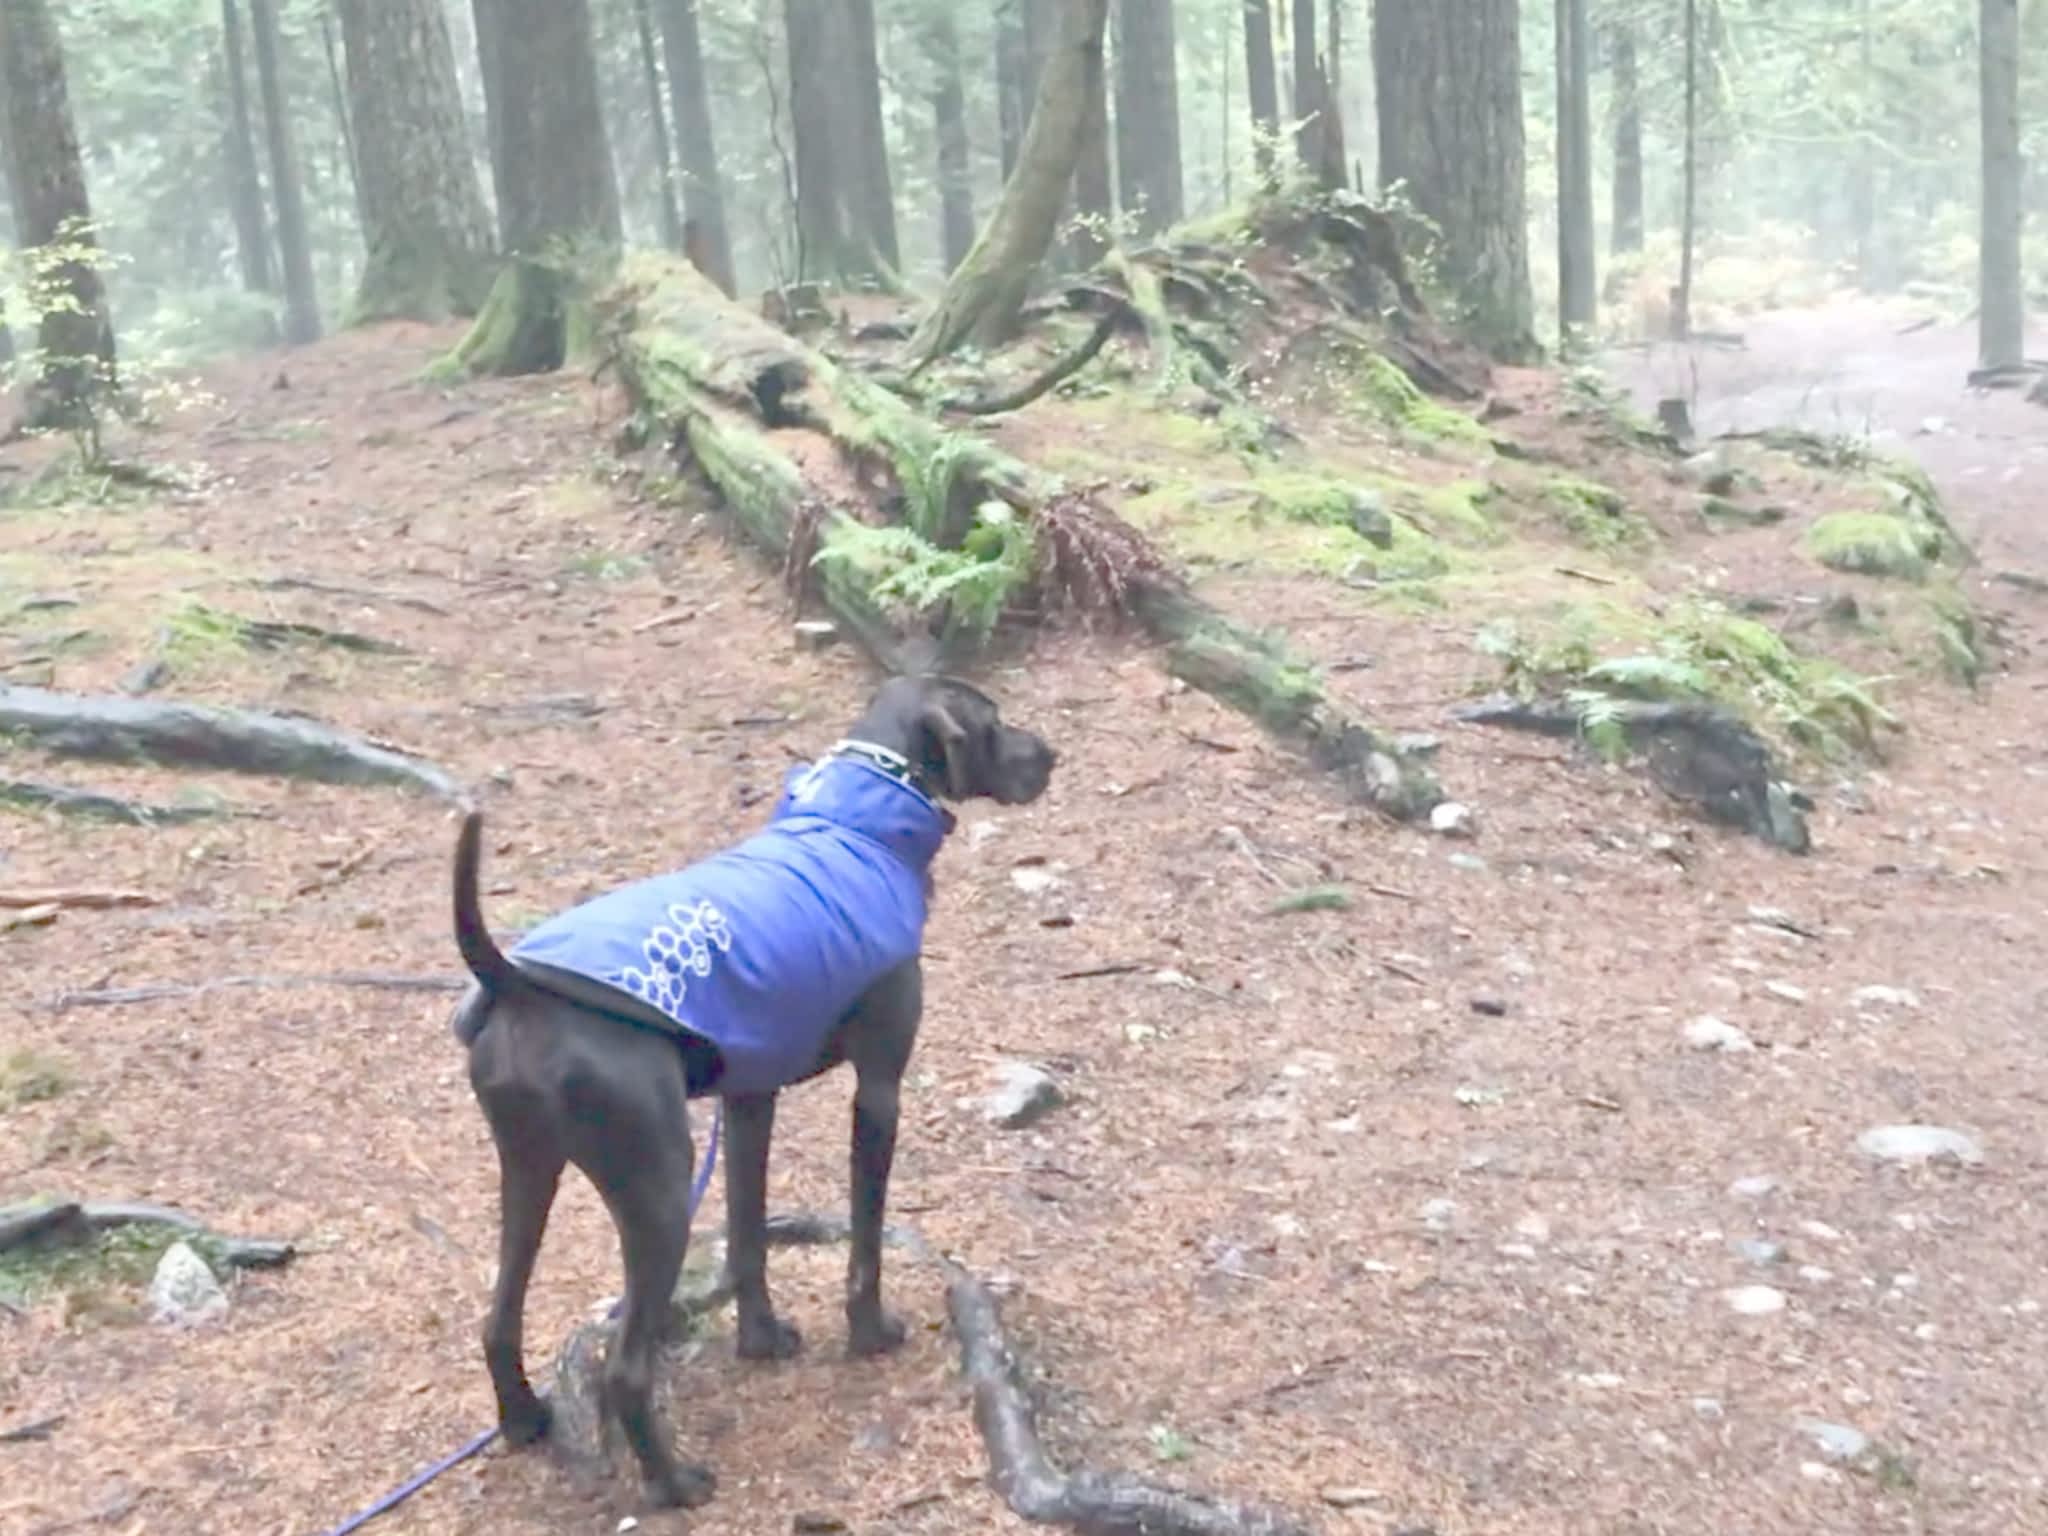 photo Cascadia Dog Training